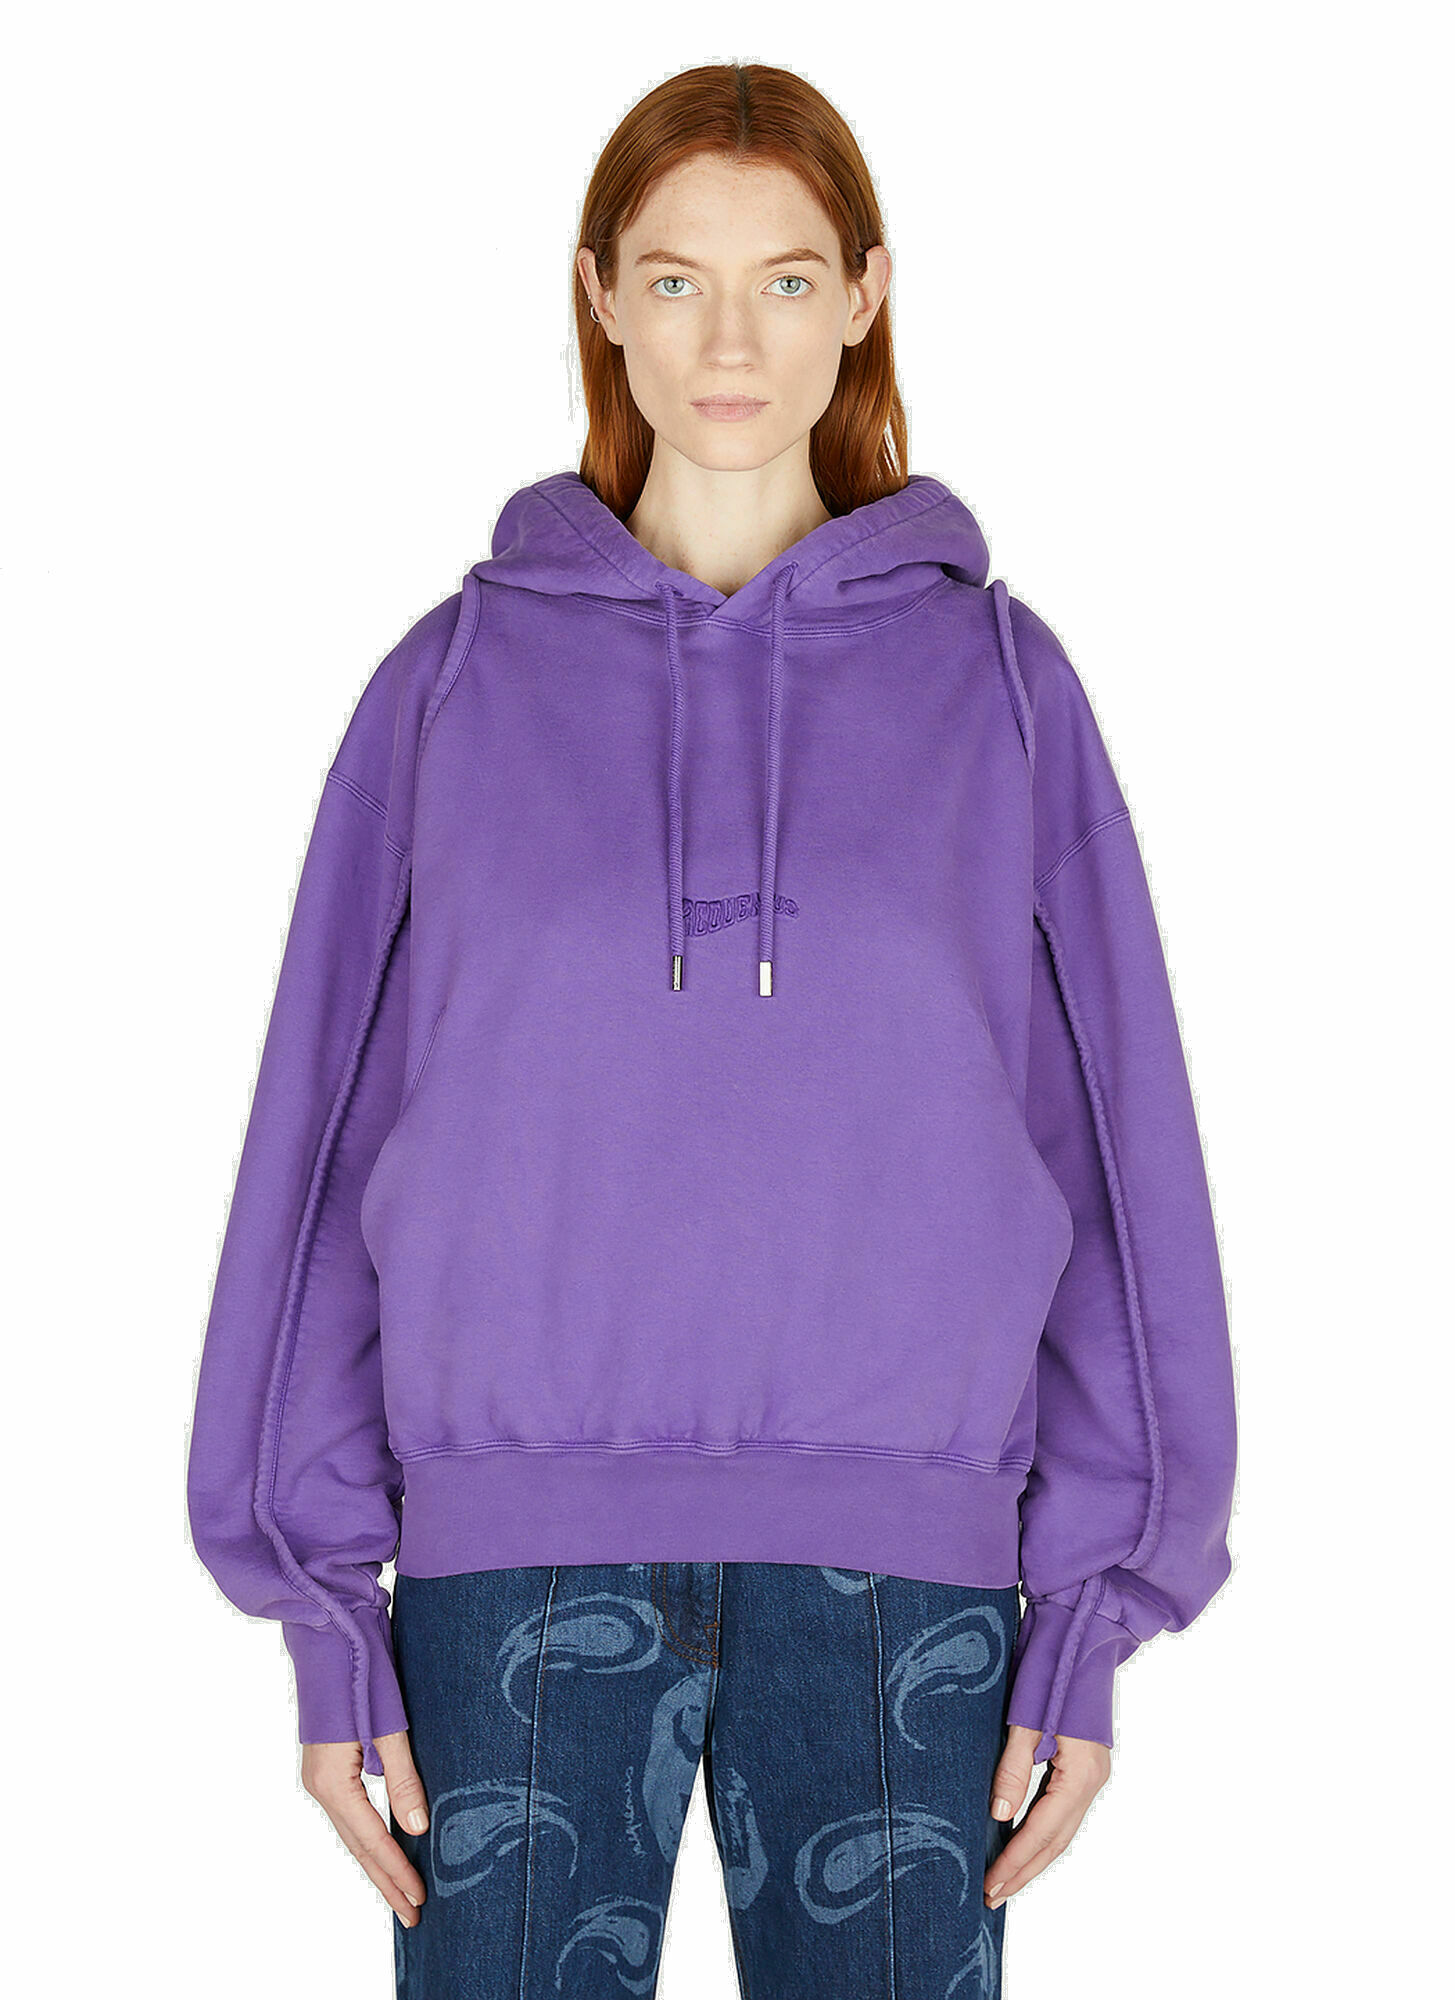 Jacquemus - Camargue Hooded Sweatshirt in Purple Jacquemus